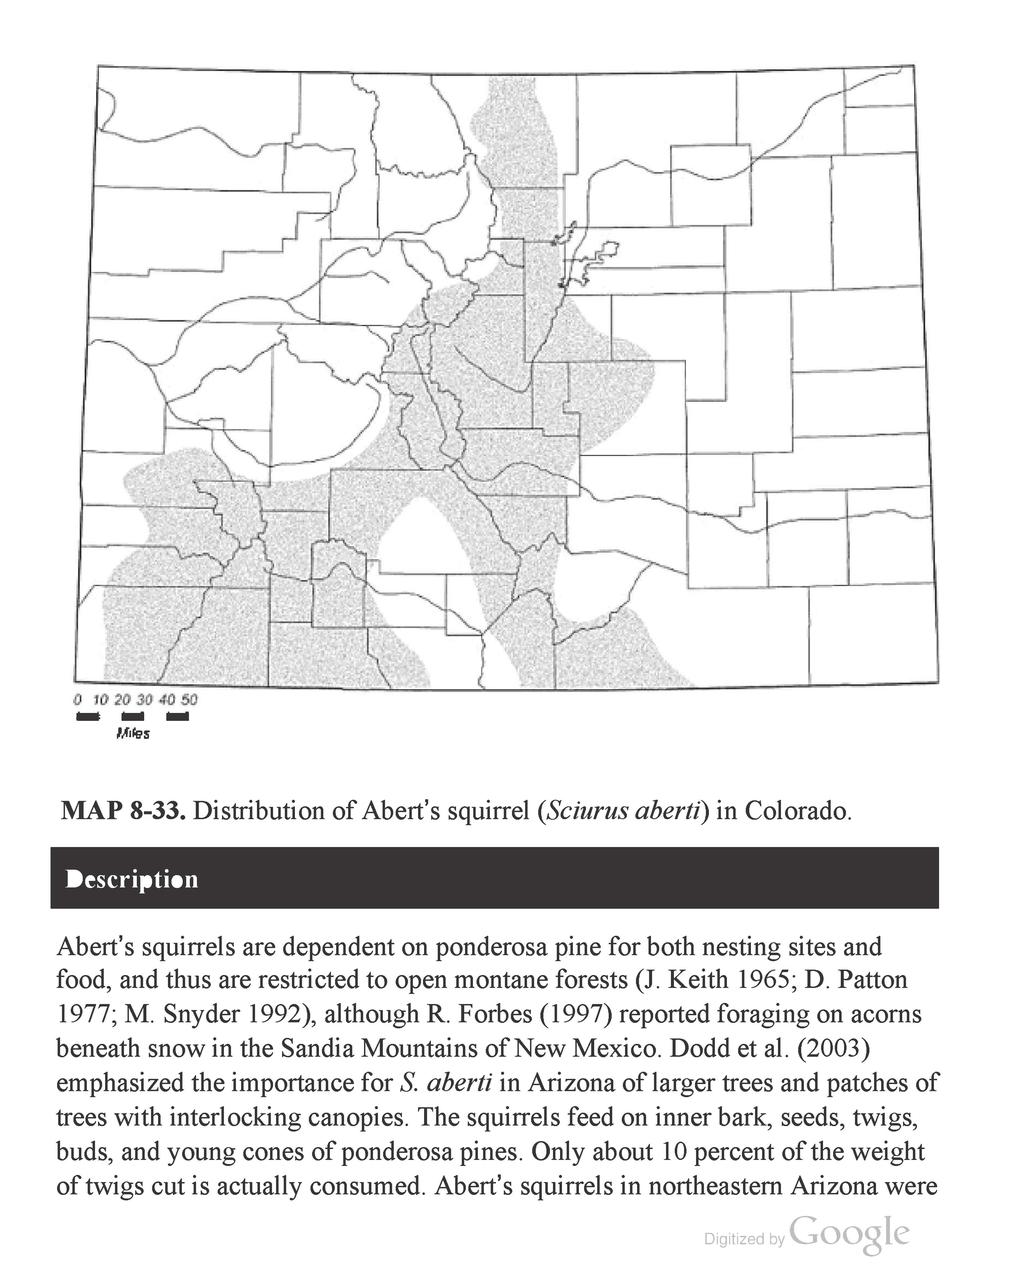 MAP 8-33. Distribution of Abert's squirrel (Sciurus aberti) in Colorado.